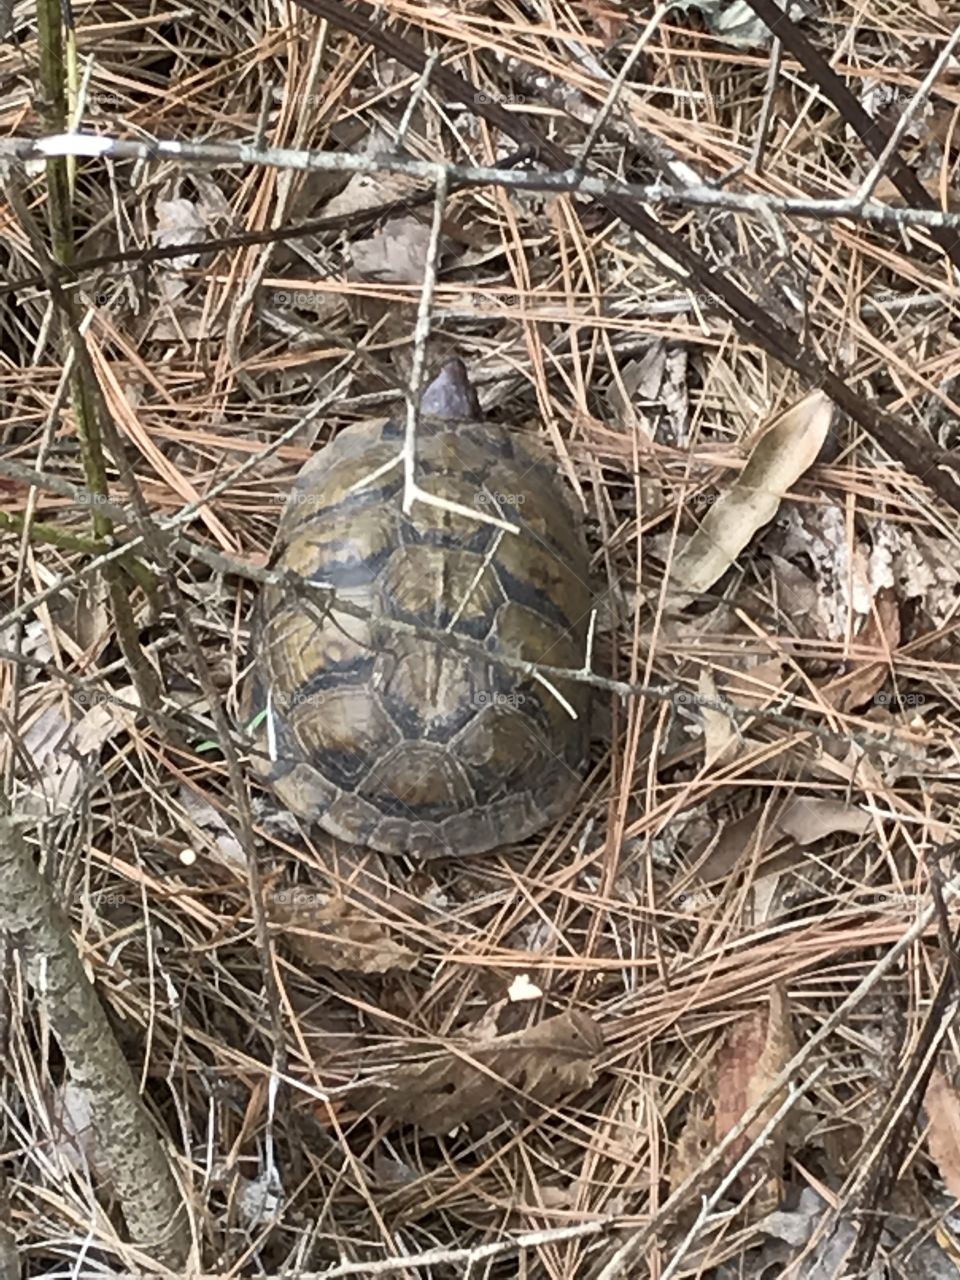 Turtle season 